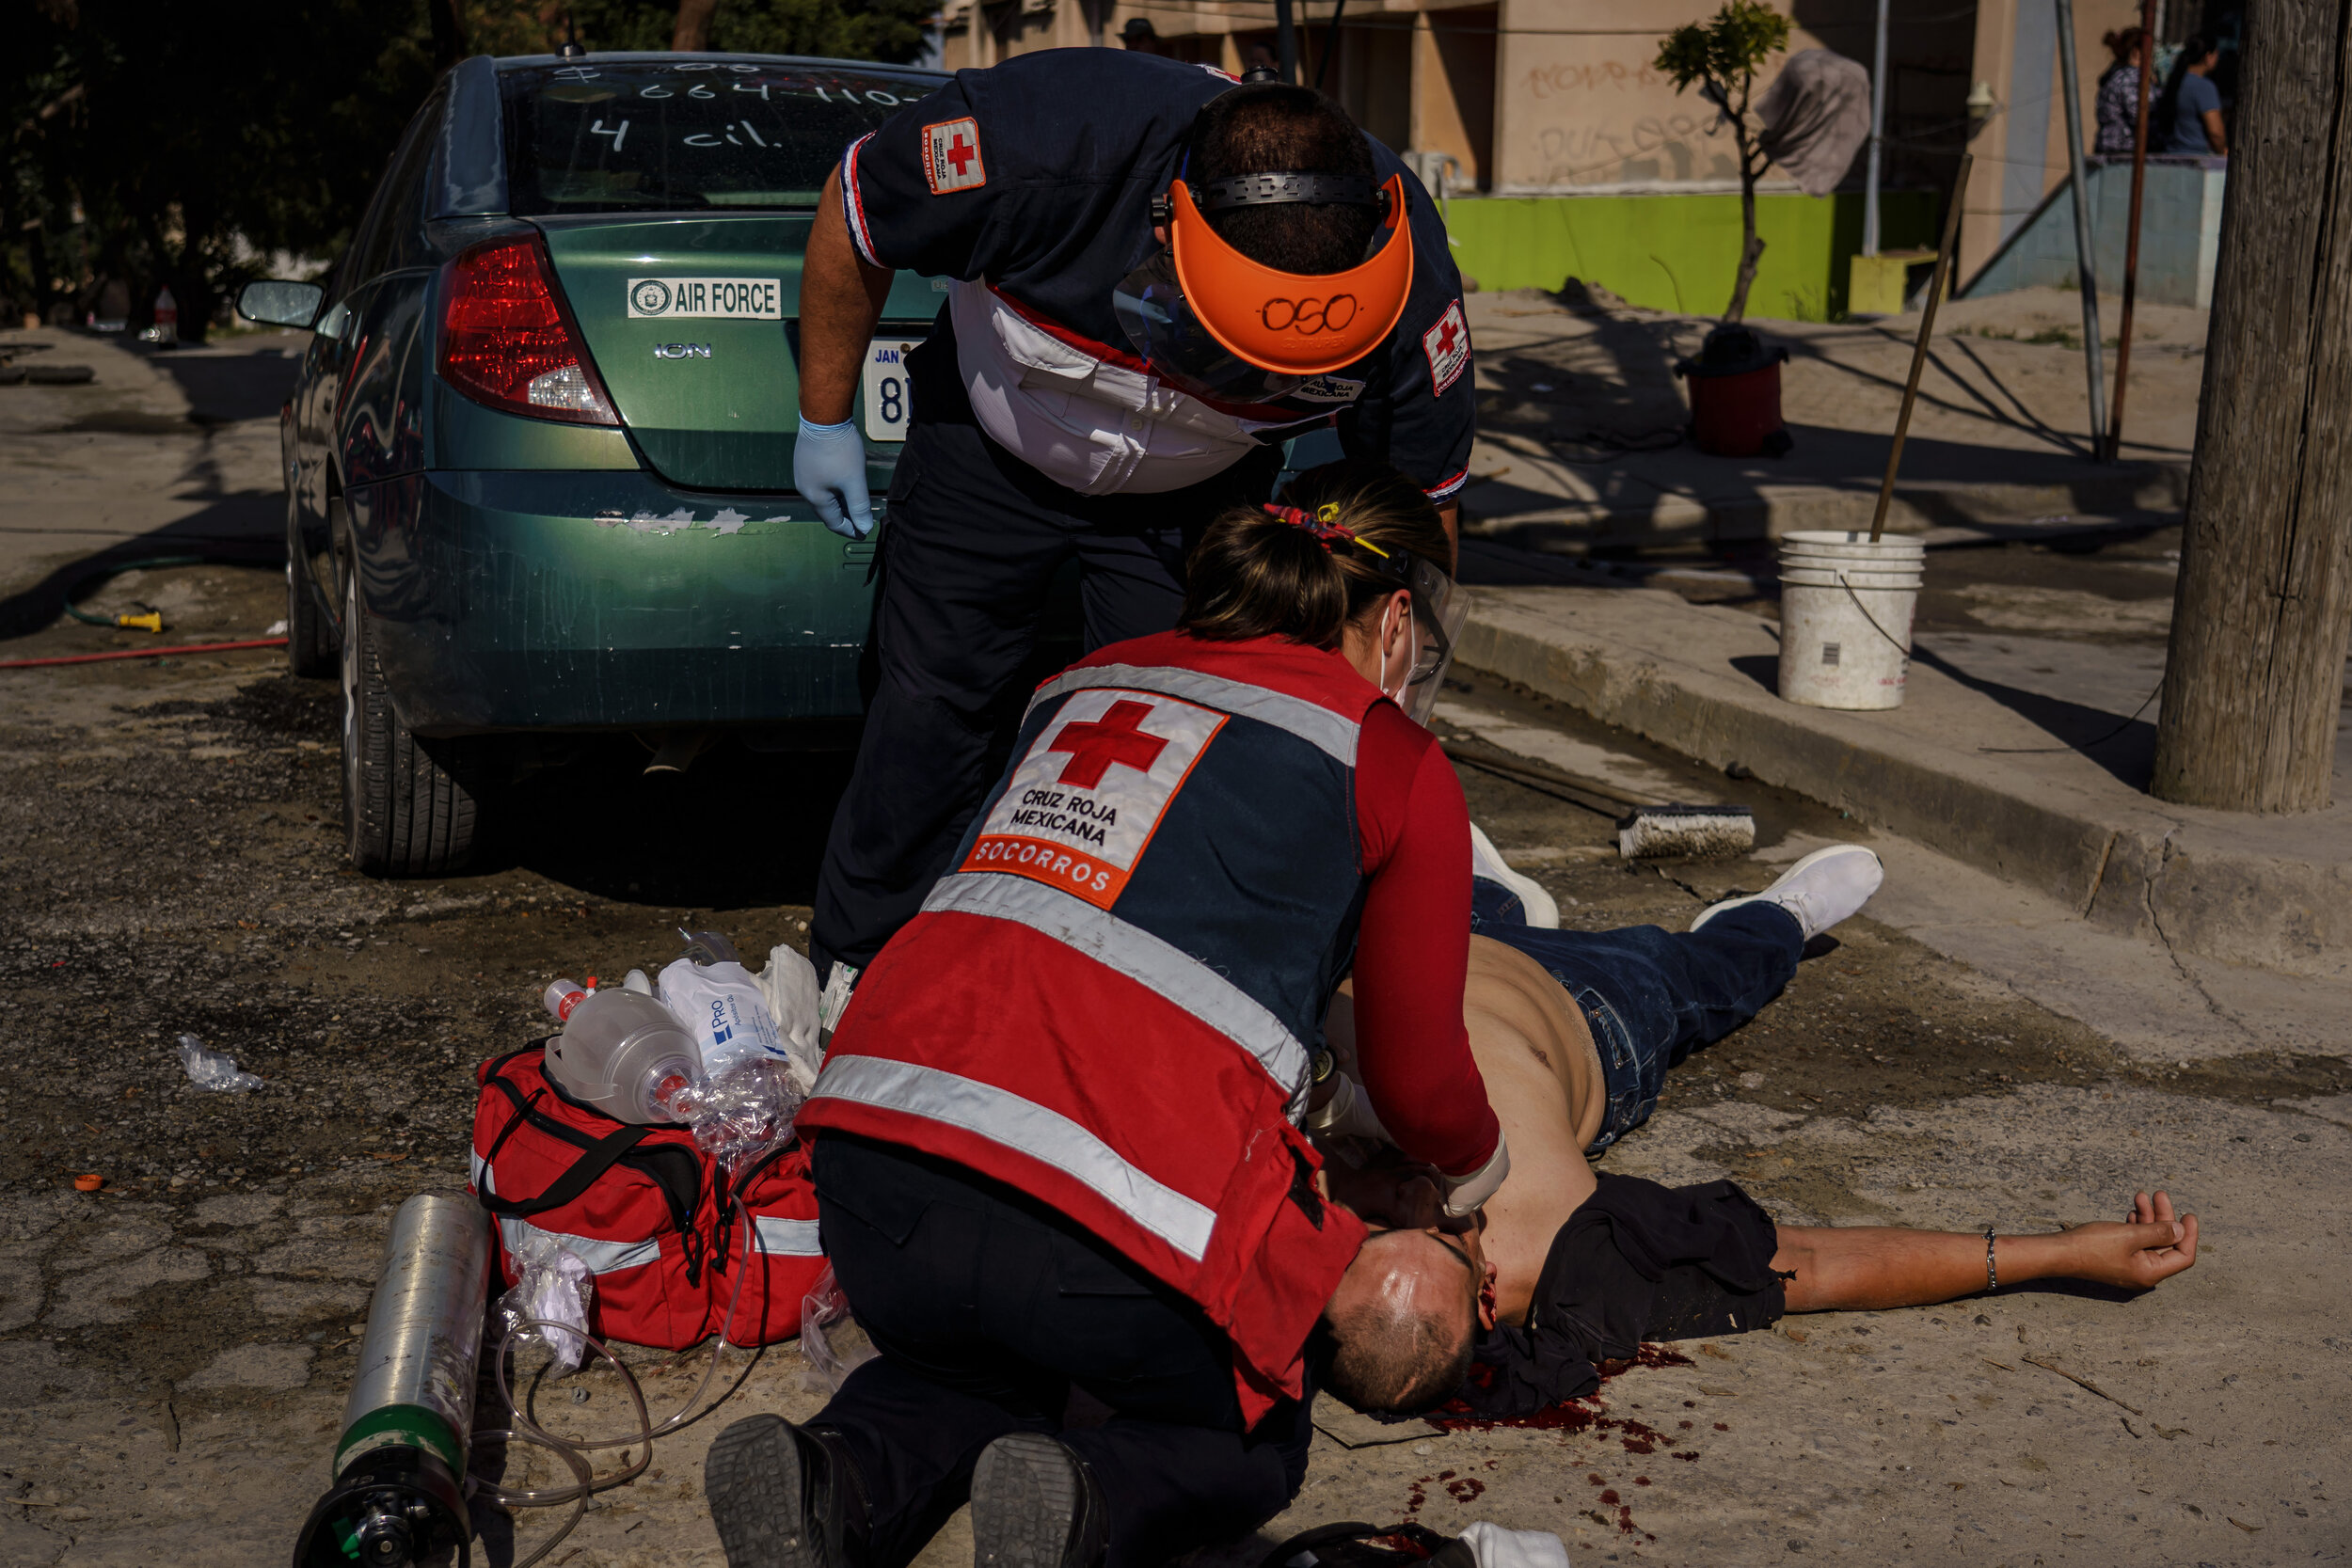  Red Cross paramedics Federico Prez Ramrez and Valeria de la torre Beaven work quickly to stabilize a patient who was shot in the back of the head at a crime scene where three men were gunned down, in Tijuana, Mexico, on April 28, 2020. Even before